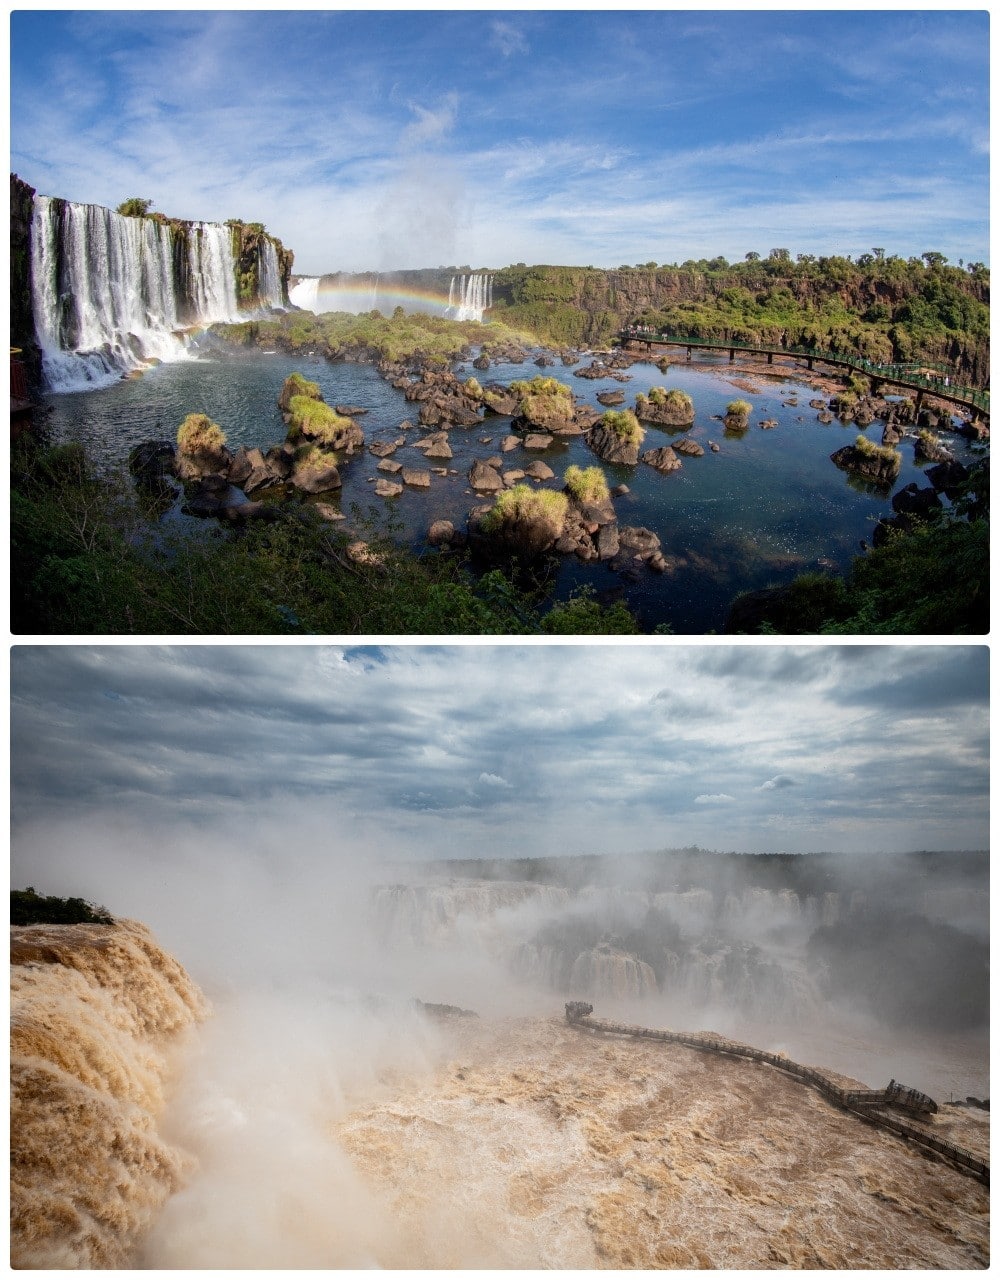 Cataratas del Iguazú antes y después de caudal abundante